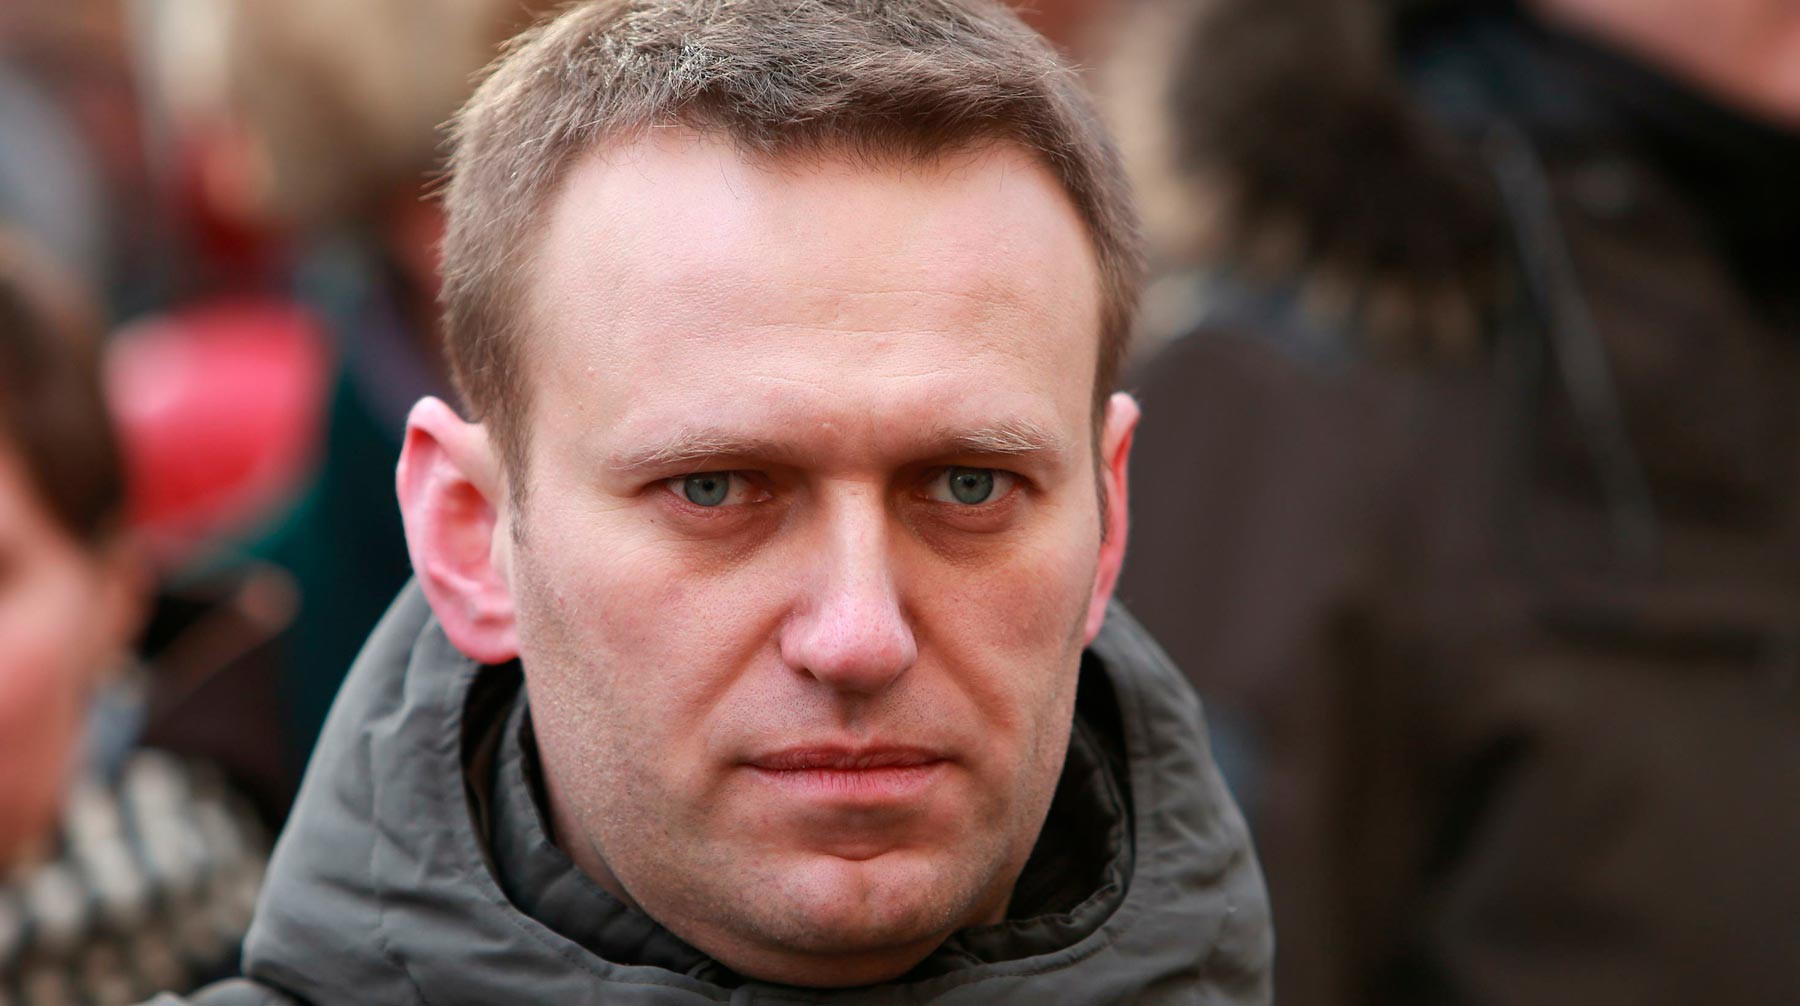 Dailystorm - Полиция Сибири не нашла нарушений в ситуации с Навальным